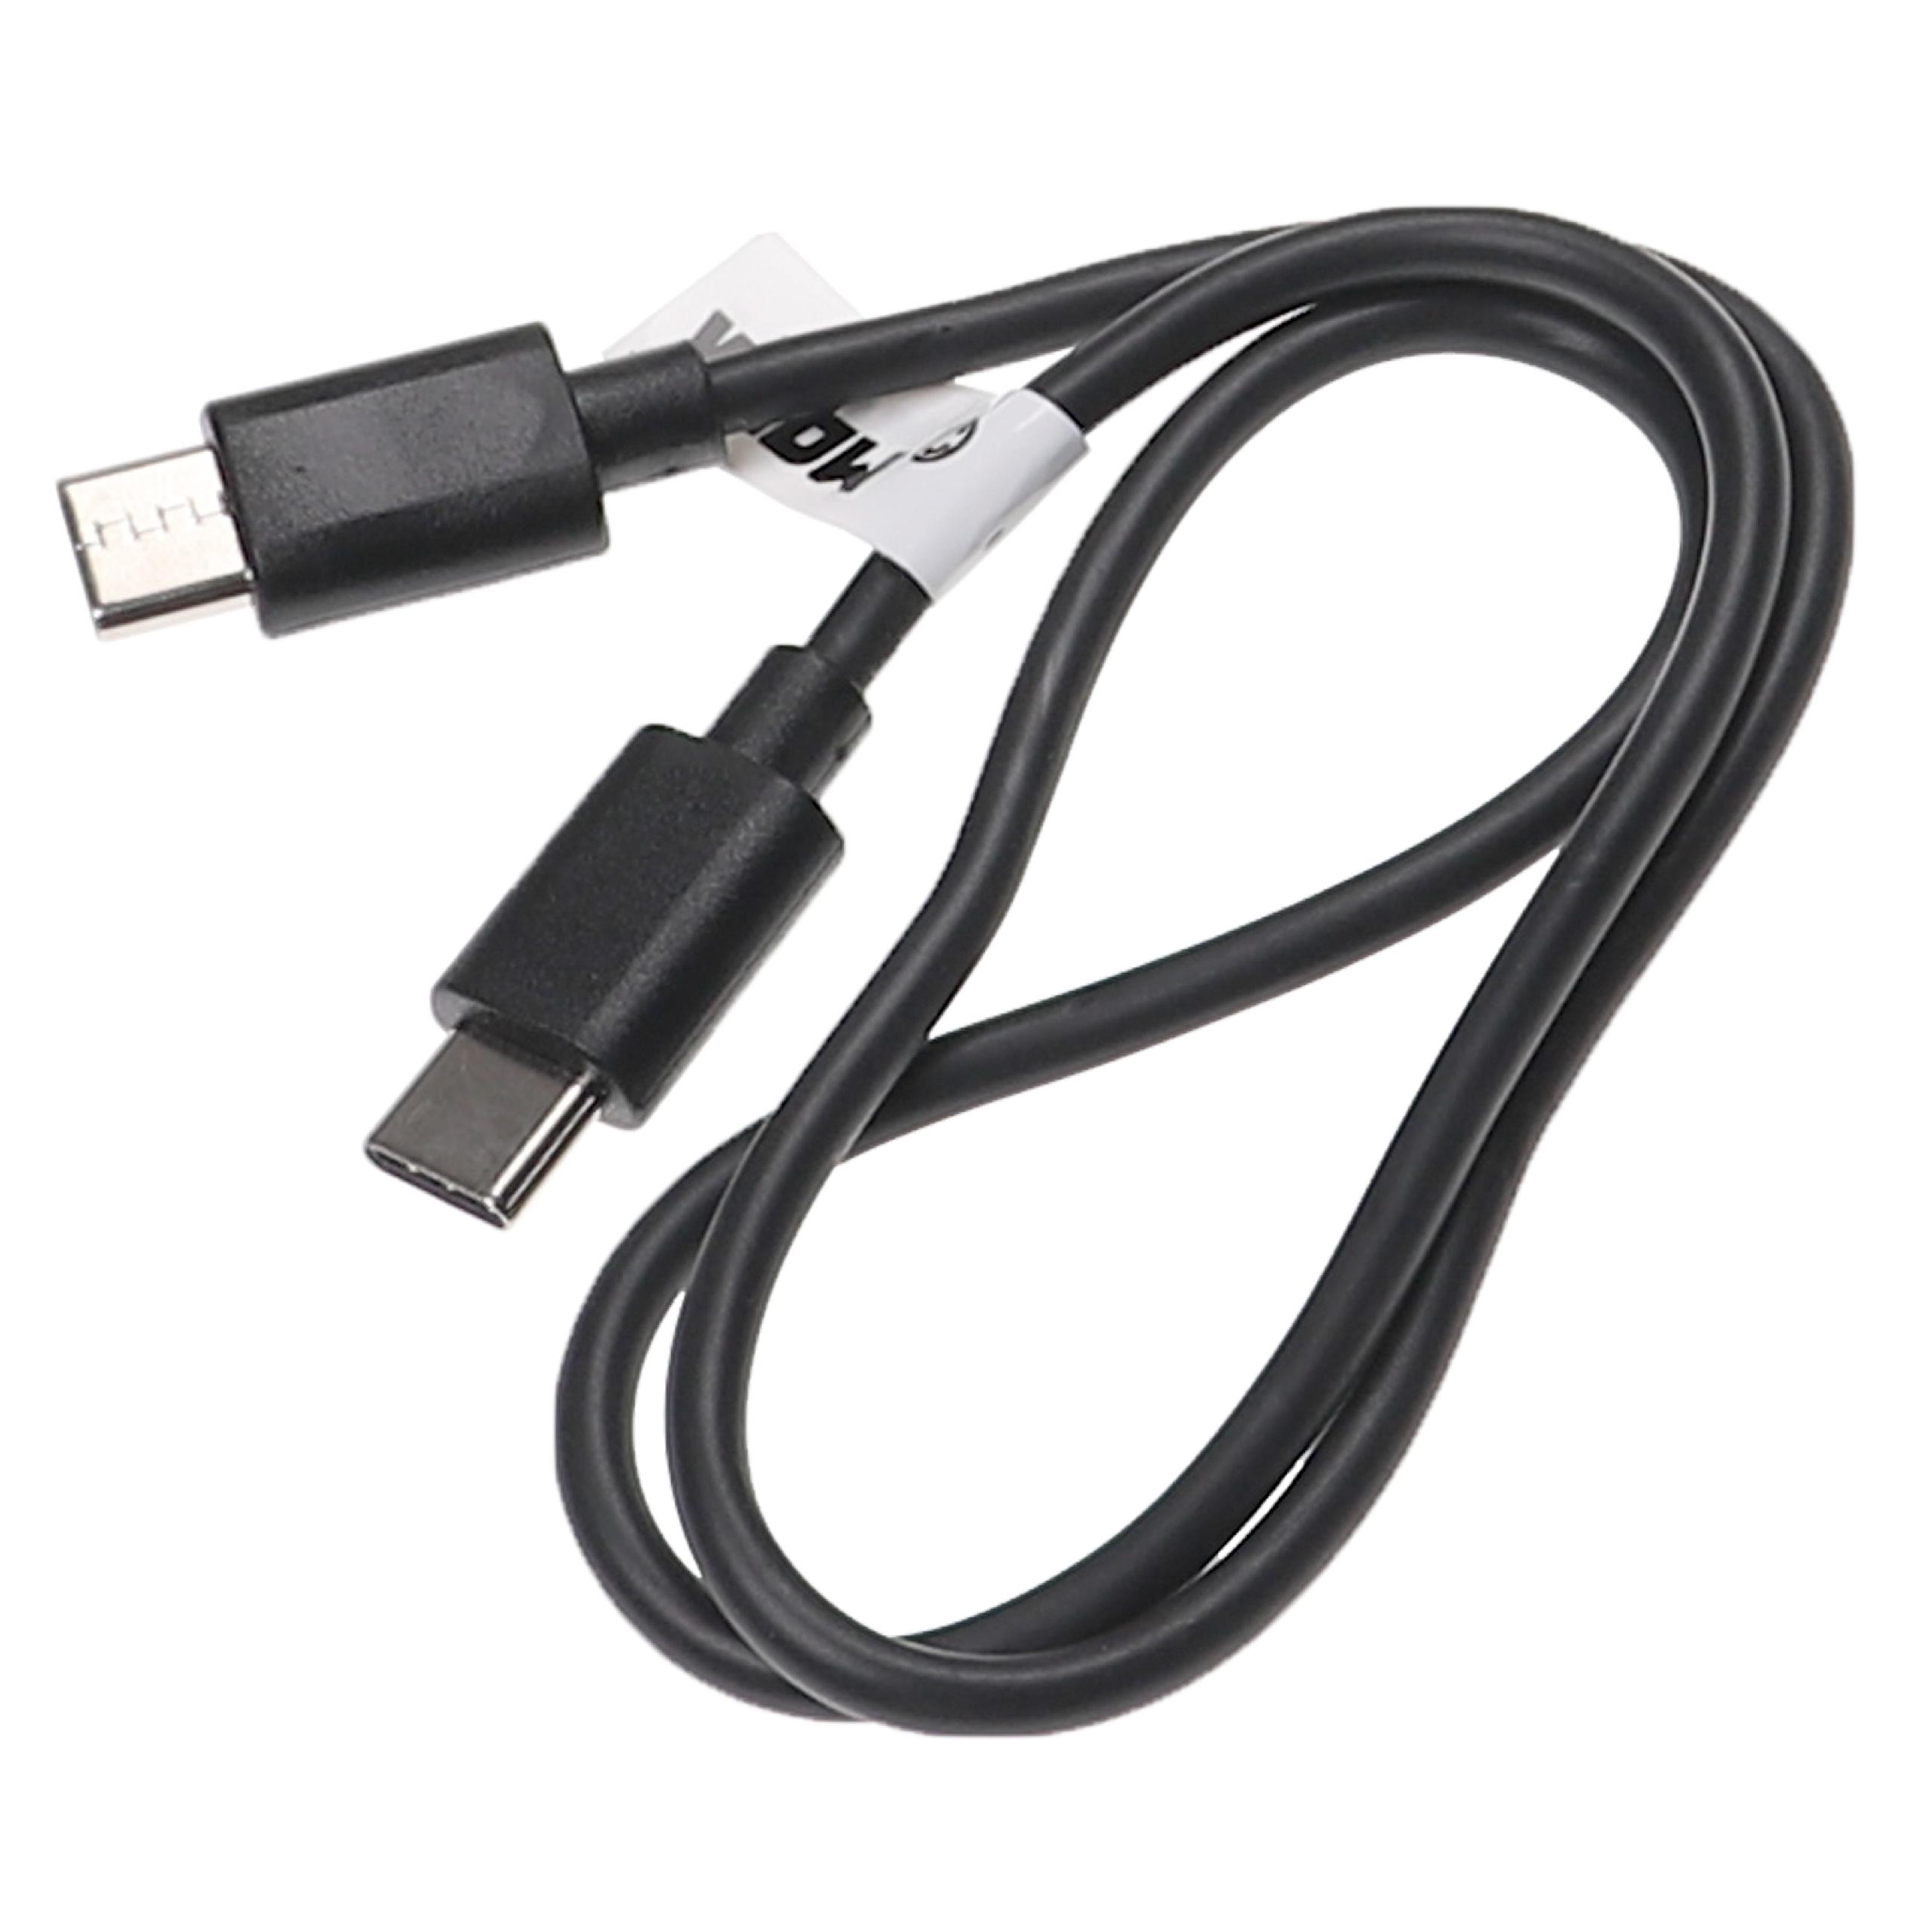 Cable de carga USB C para diversos portátiles, tablets, smartphones - 50 cm, negro